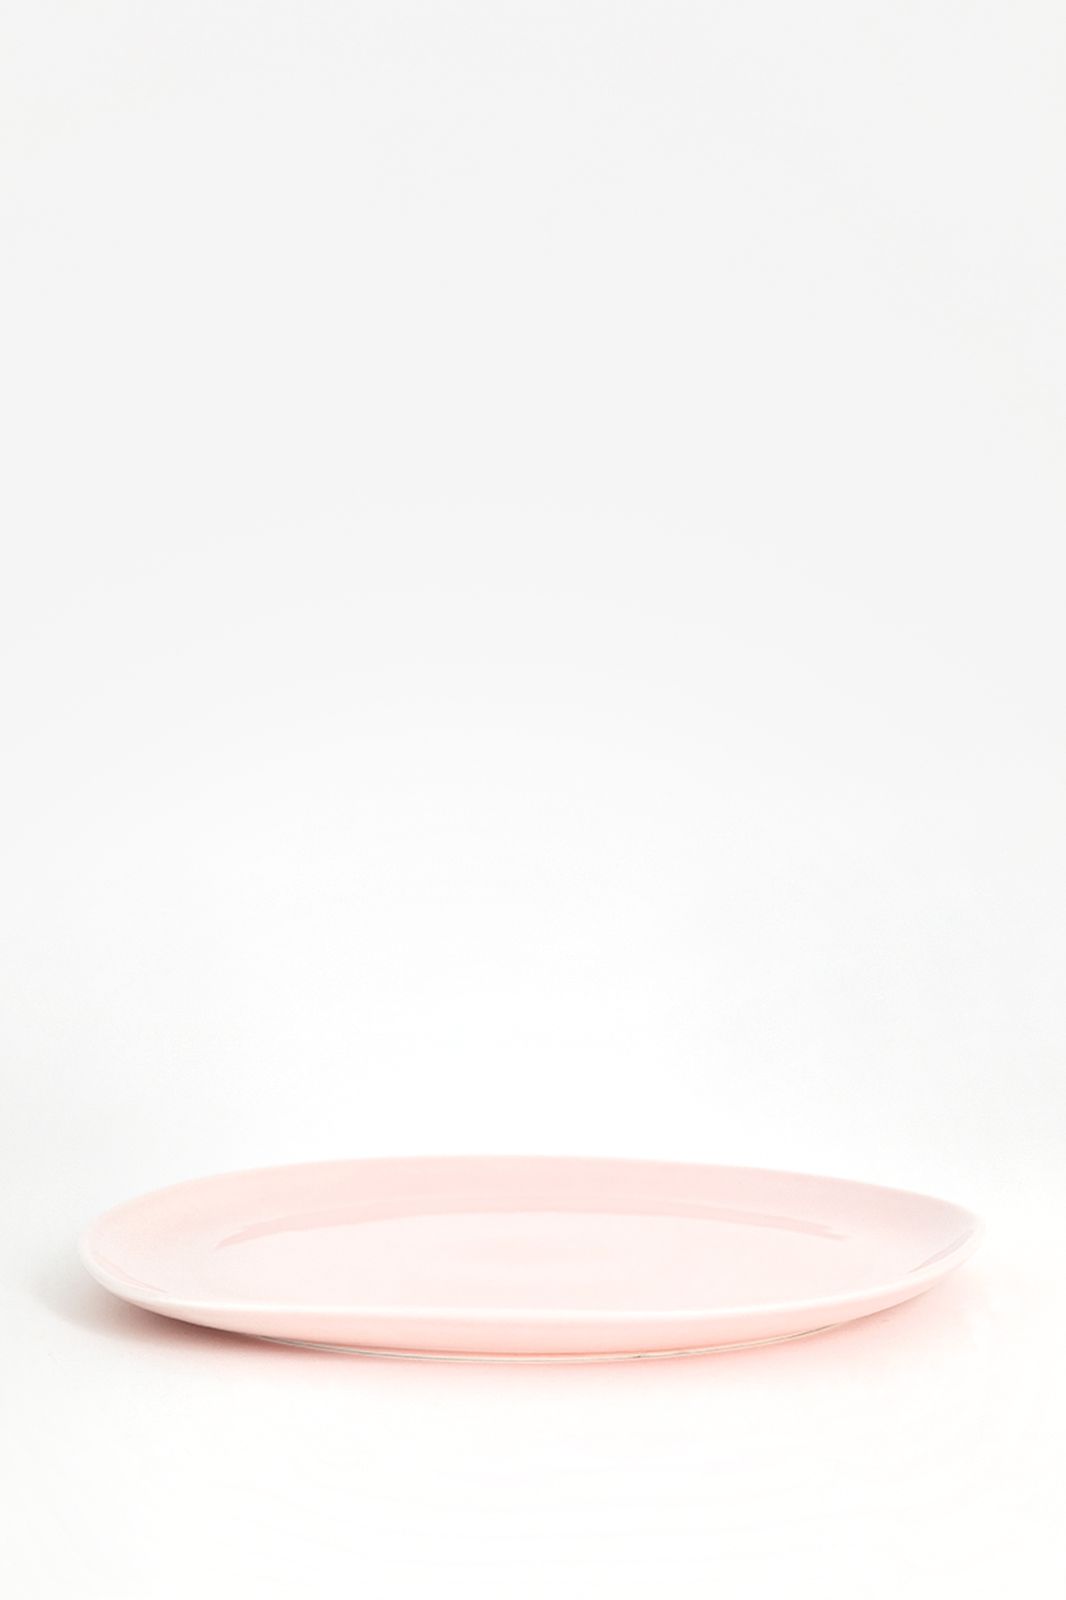 Roze dinerborden met witte rand